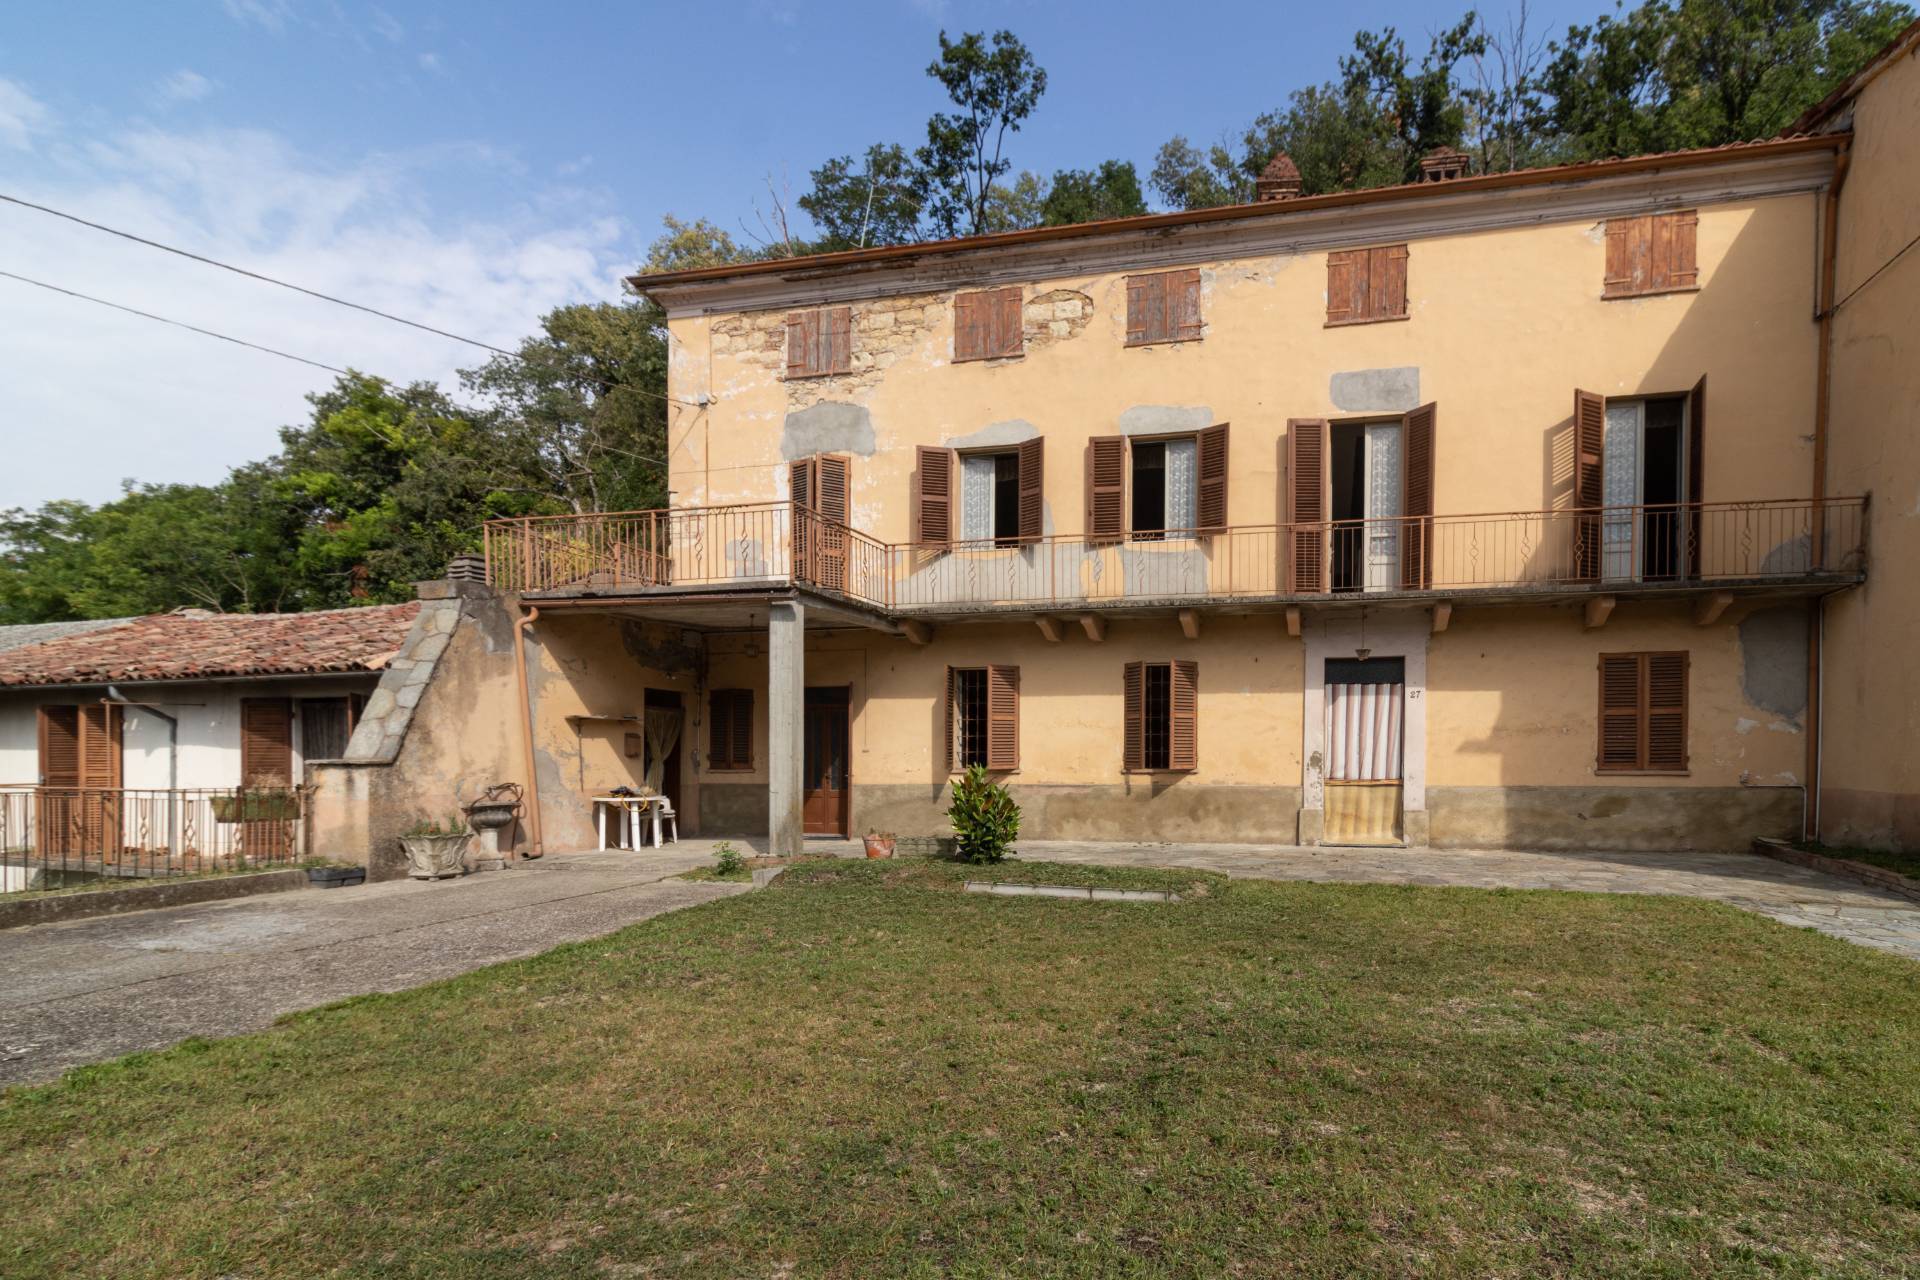 Rustico / Casale in vendita a Moncalvo, 16 locali, prezzo € 70.000 | PortaleAgenzieImmobiliari.it